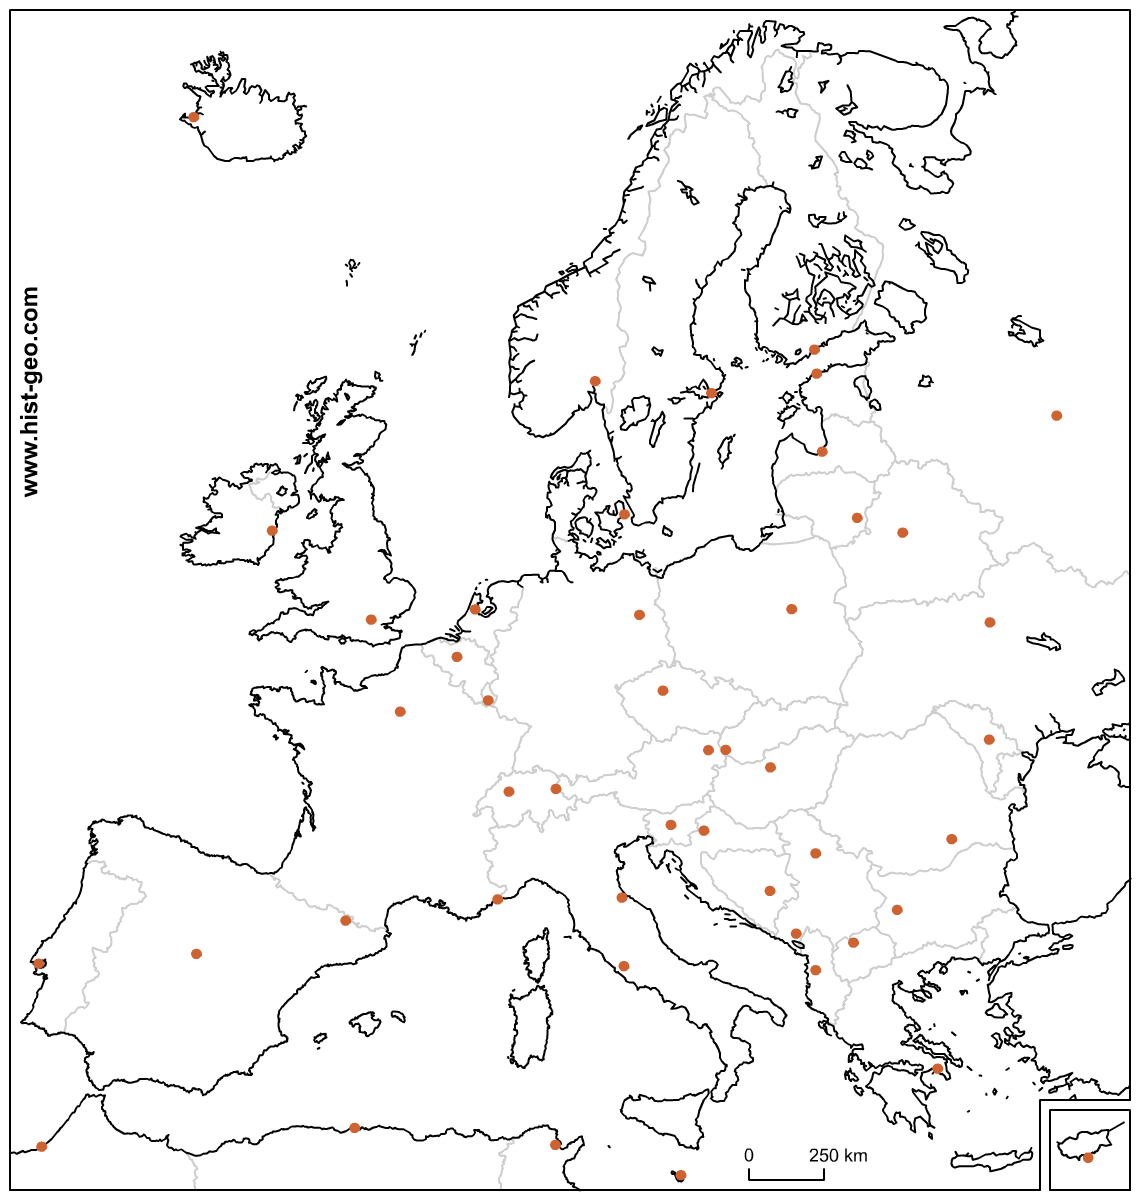 Fond De Carte Avec Les Pays Et Les Capitales Européennes (Ue) encequiconcerne Carte Europe Avec Capitales